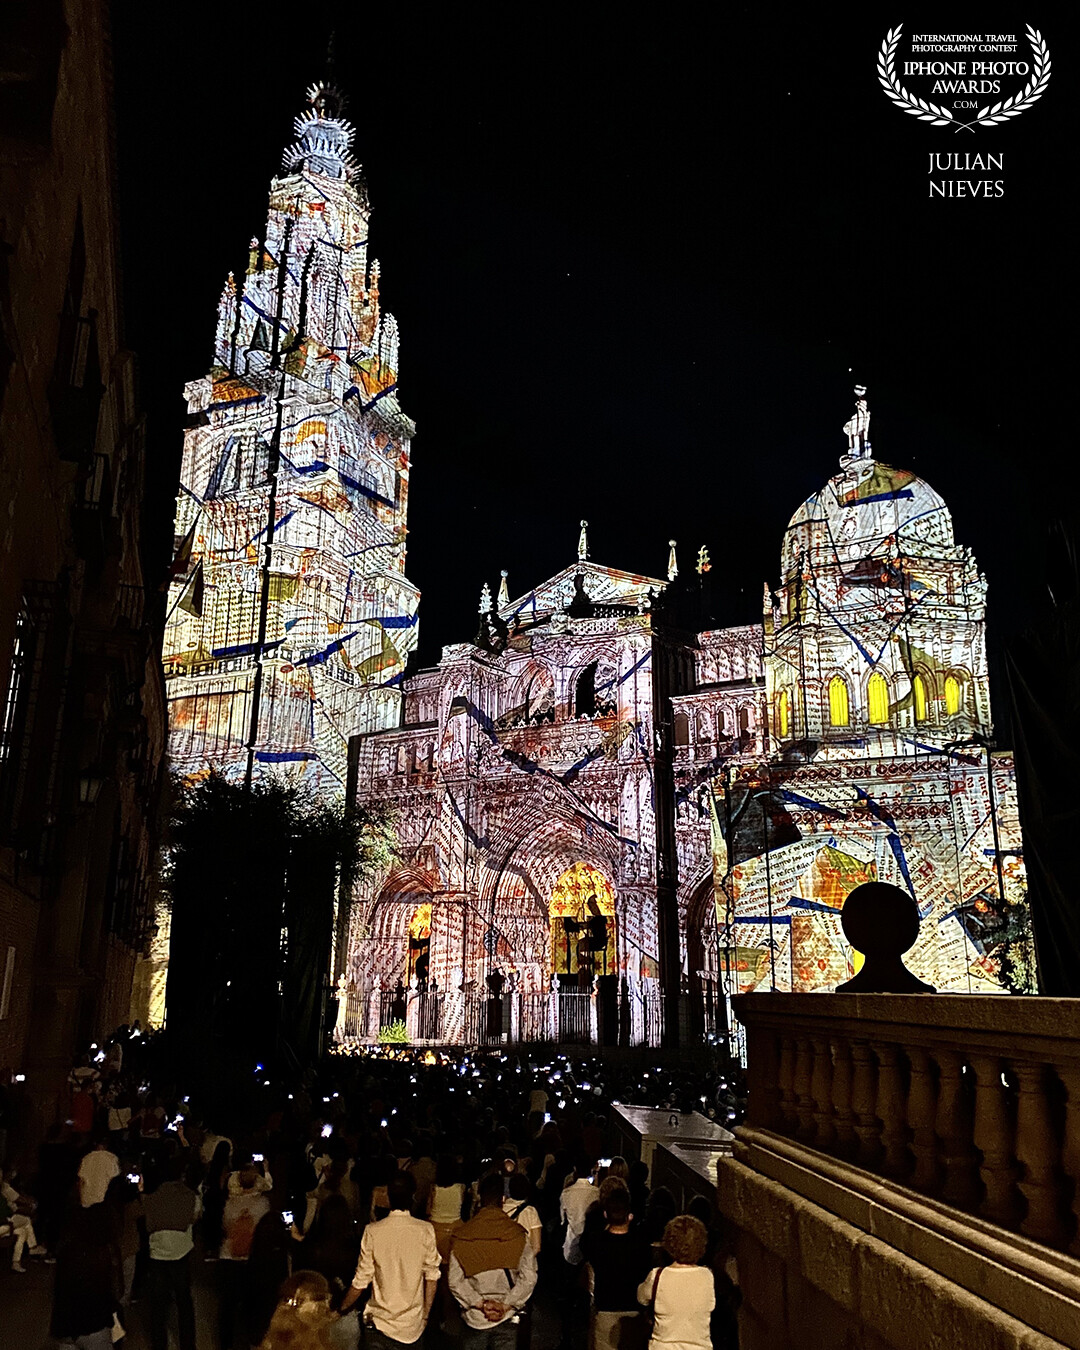 La catedral Primada de Toledo se viste de gala para la noche espectacular con proyecciones de luz en 3D y sonido